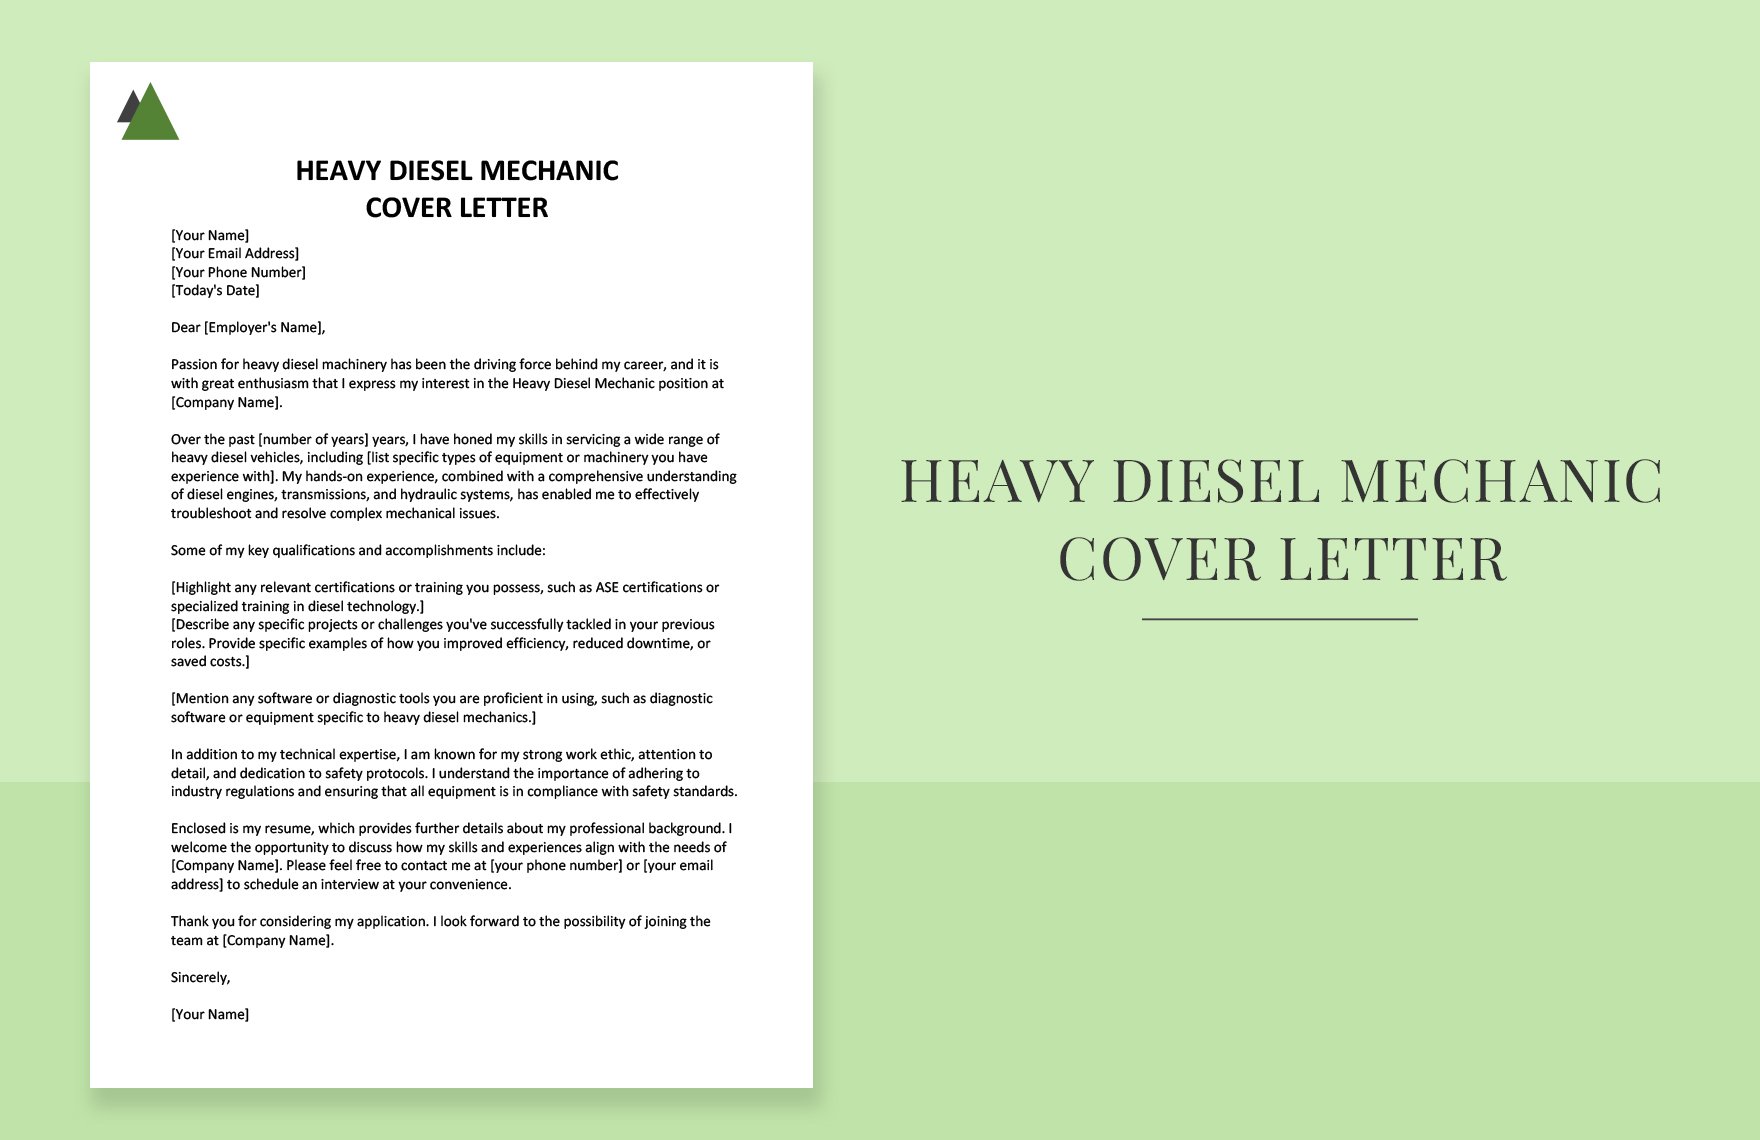 Heavy Diesel Mechanic Cover Letter